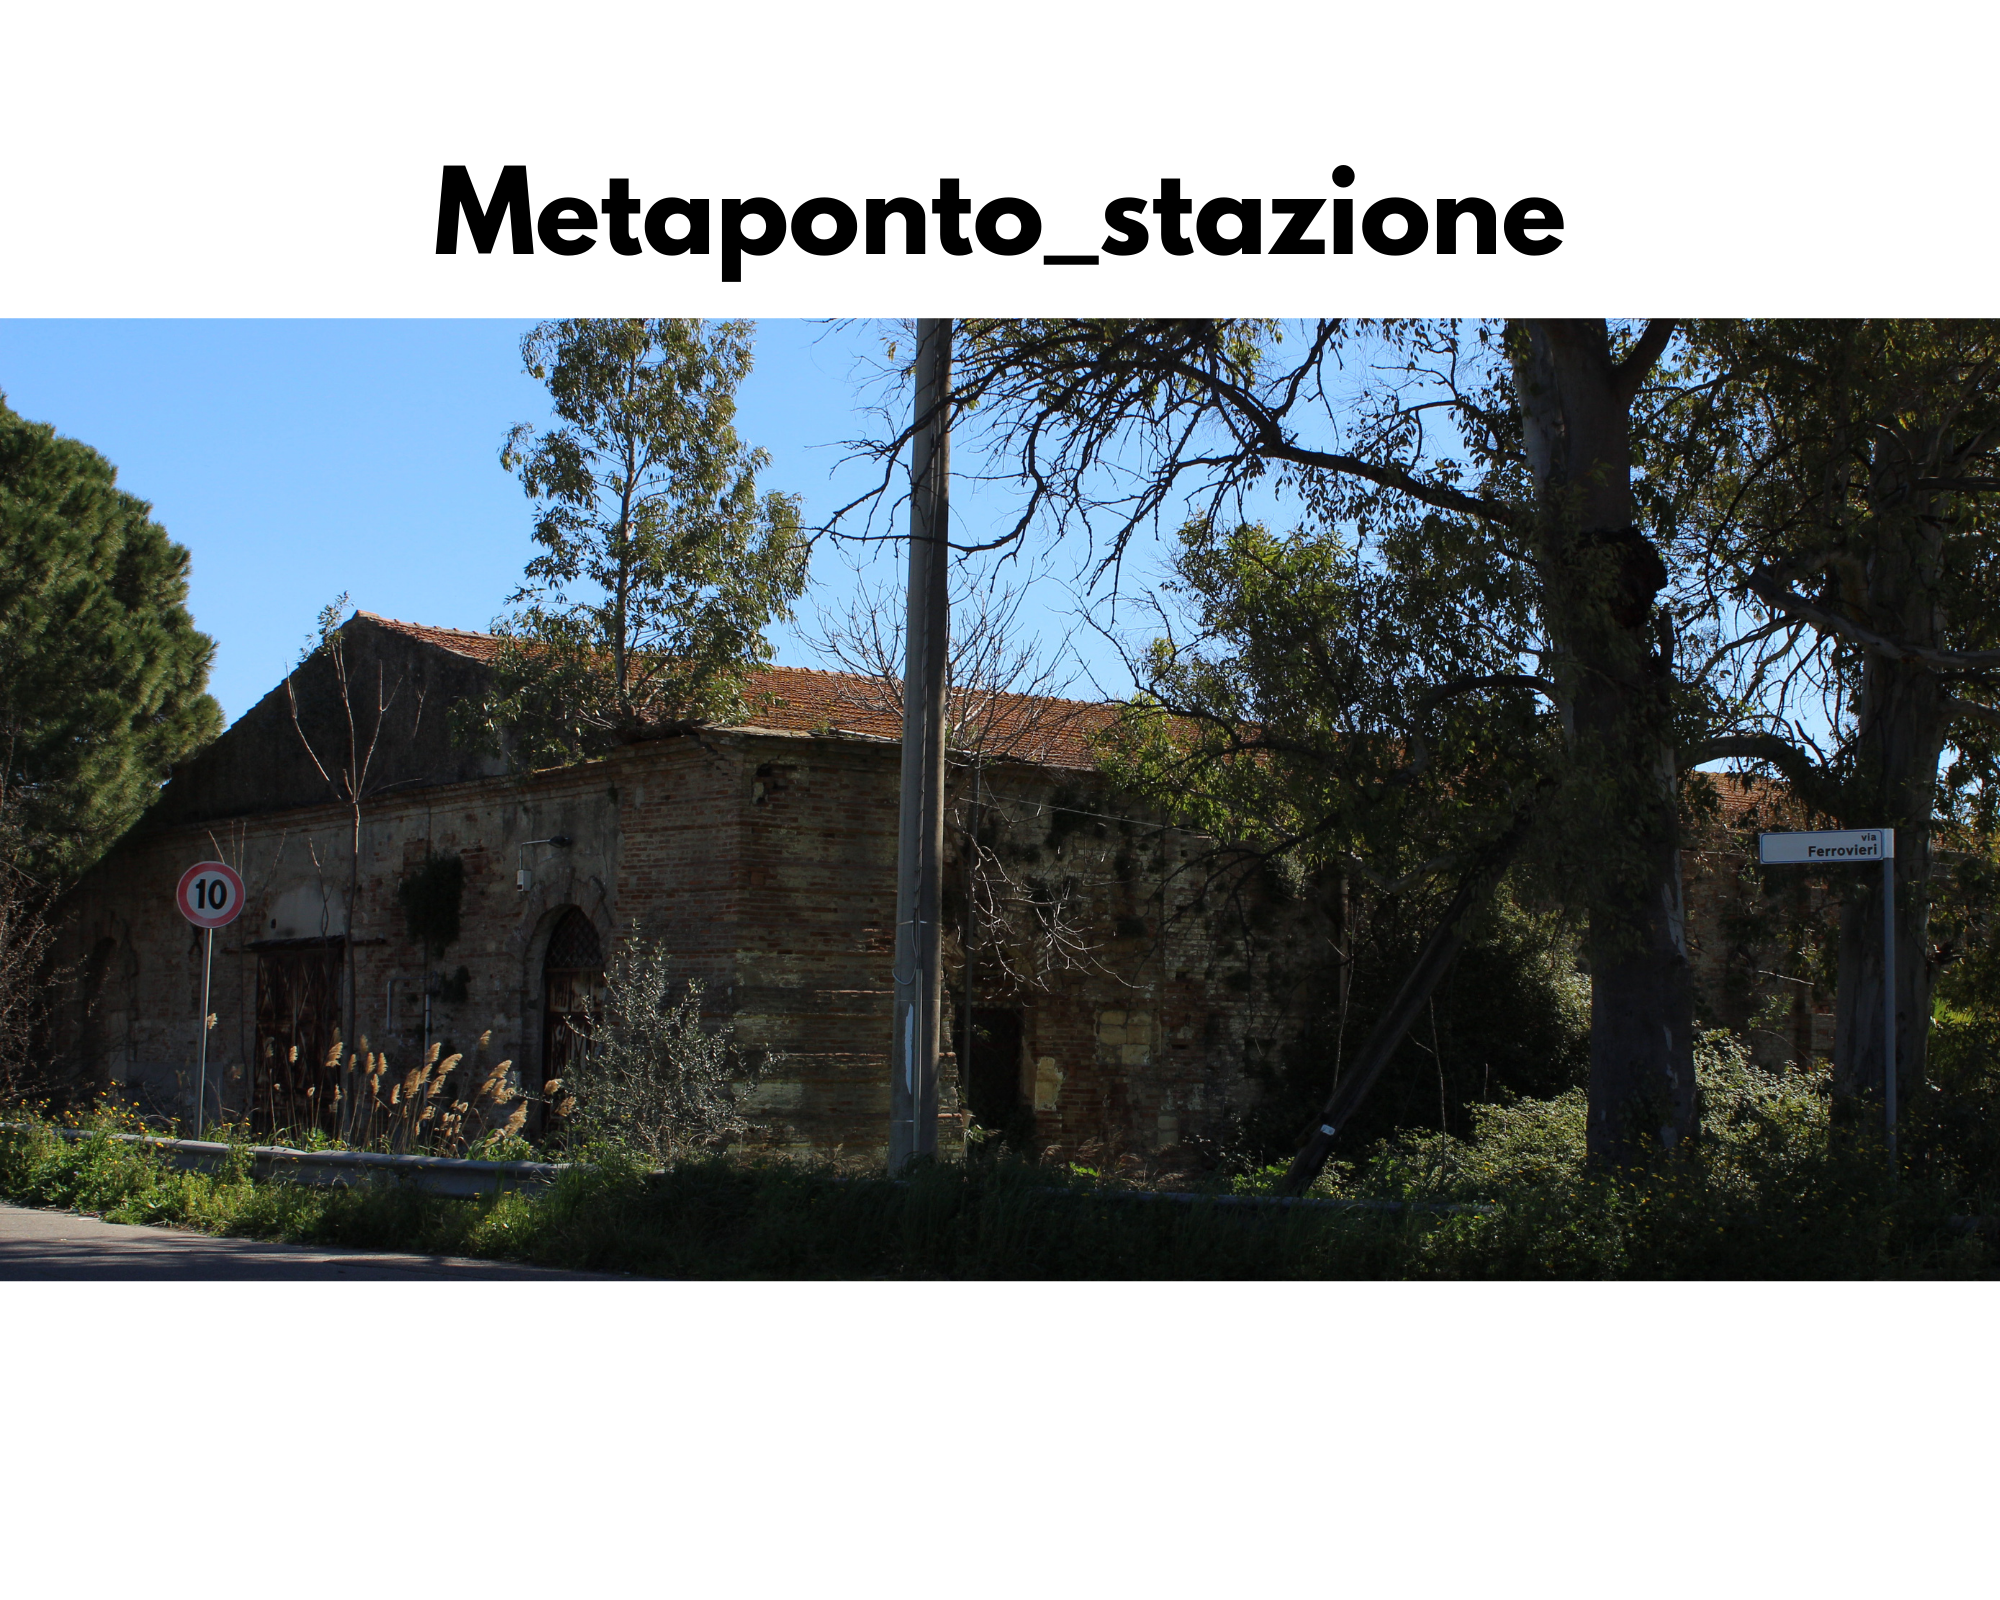 Metaponto, stazione via Ferrovieri ennesimo vecchio edificio abbandonato limite di velocità 10 km/h